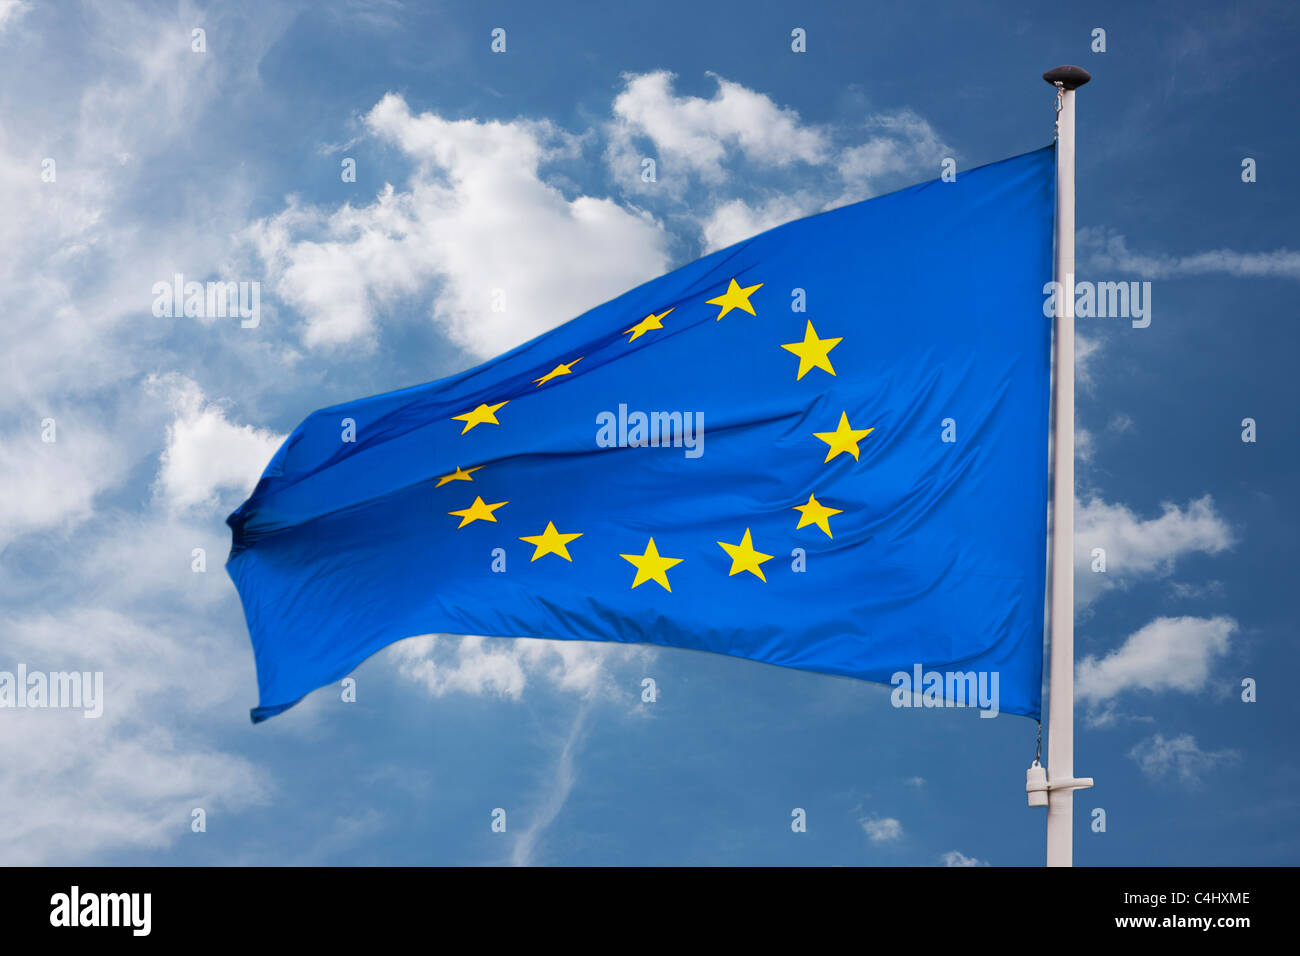 Detailansicht einer Flagge der Europäischen Union | Detail photo of the Flag from the European Union Stock Photo